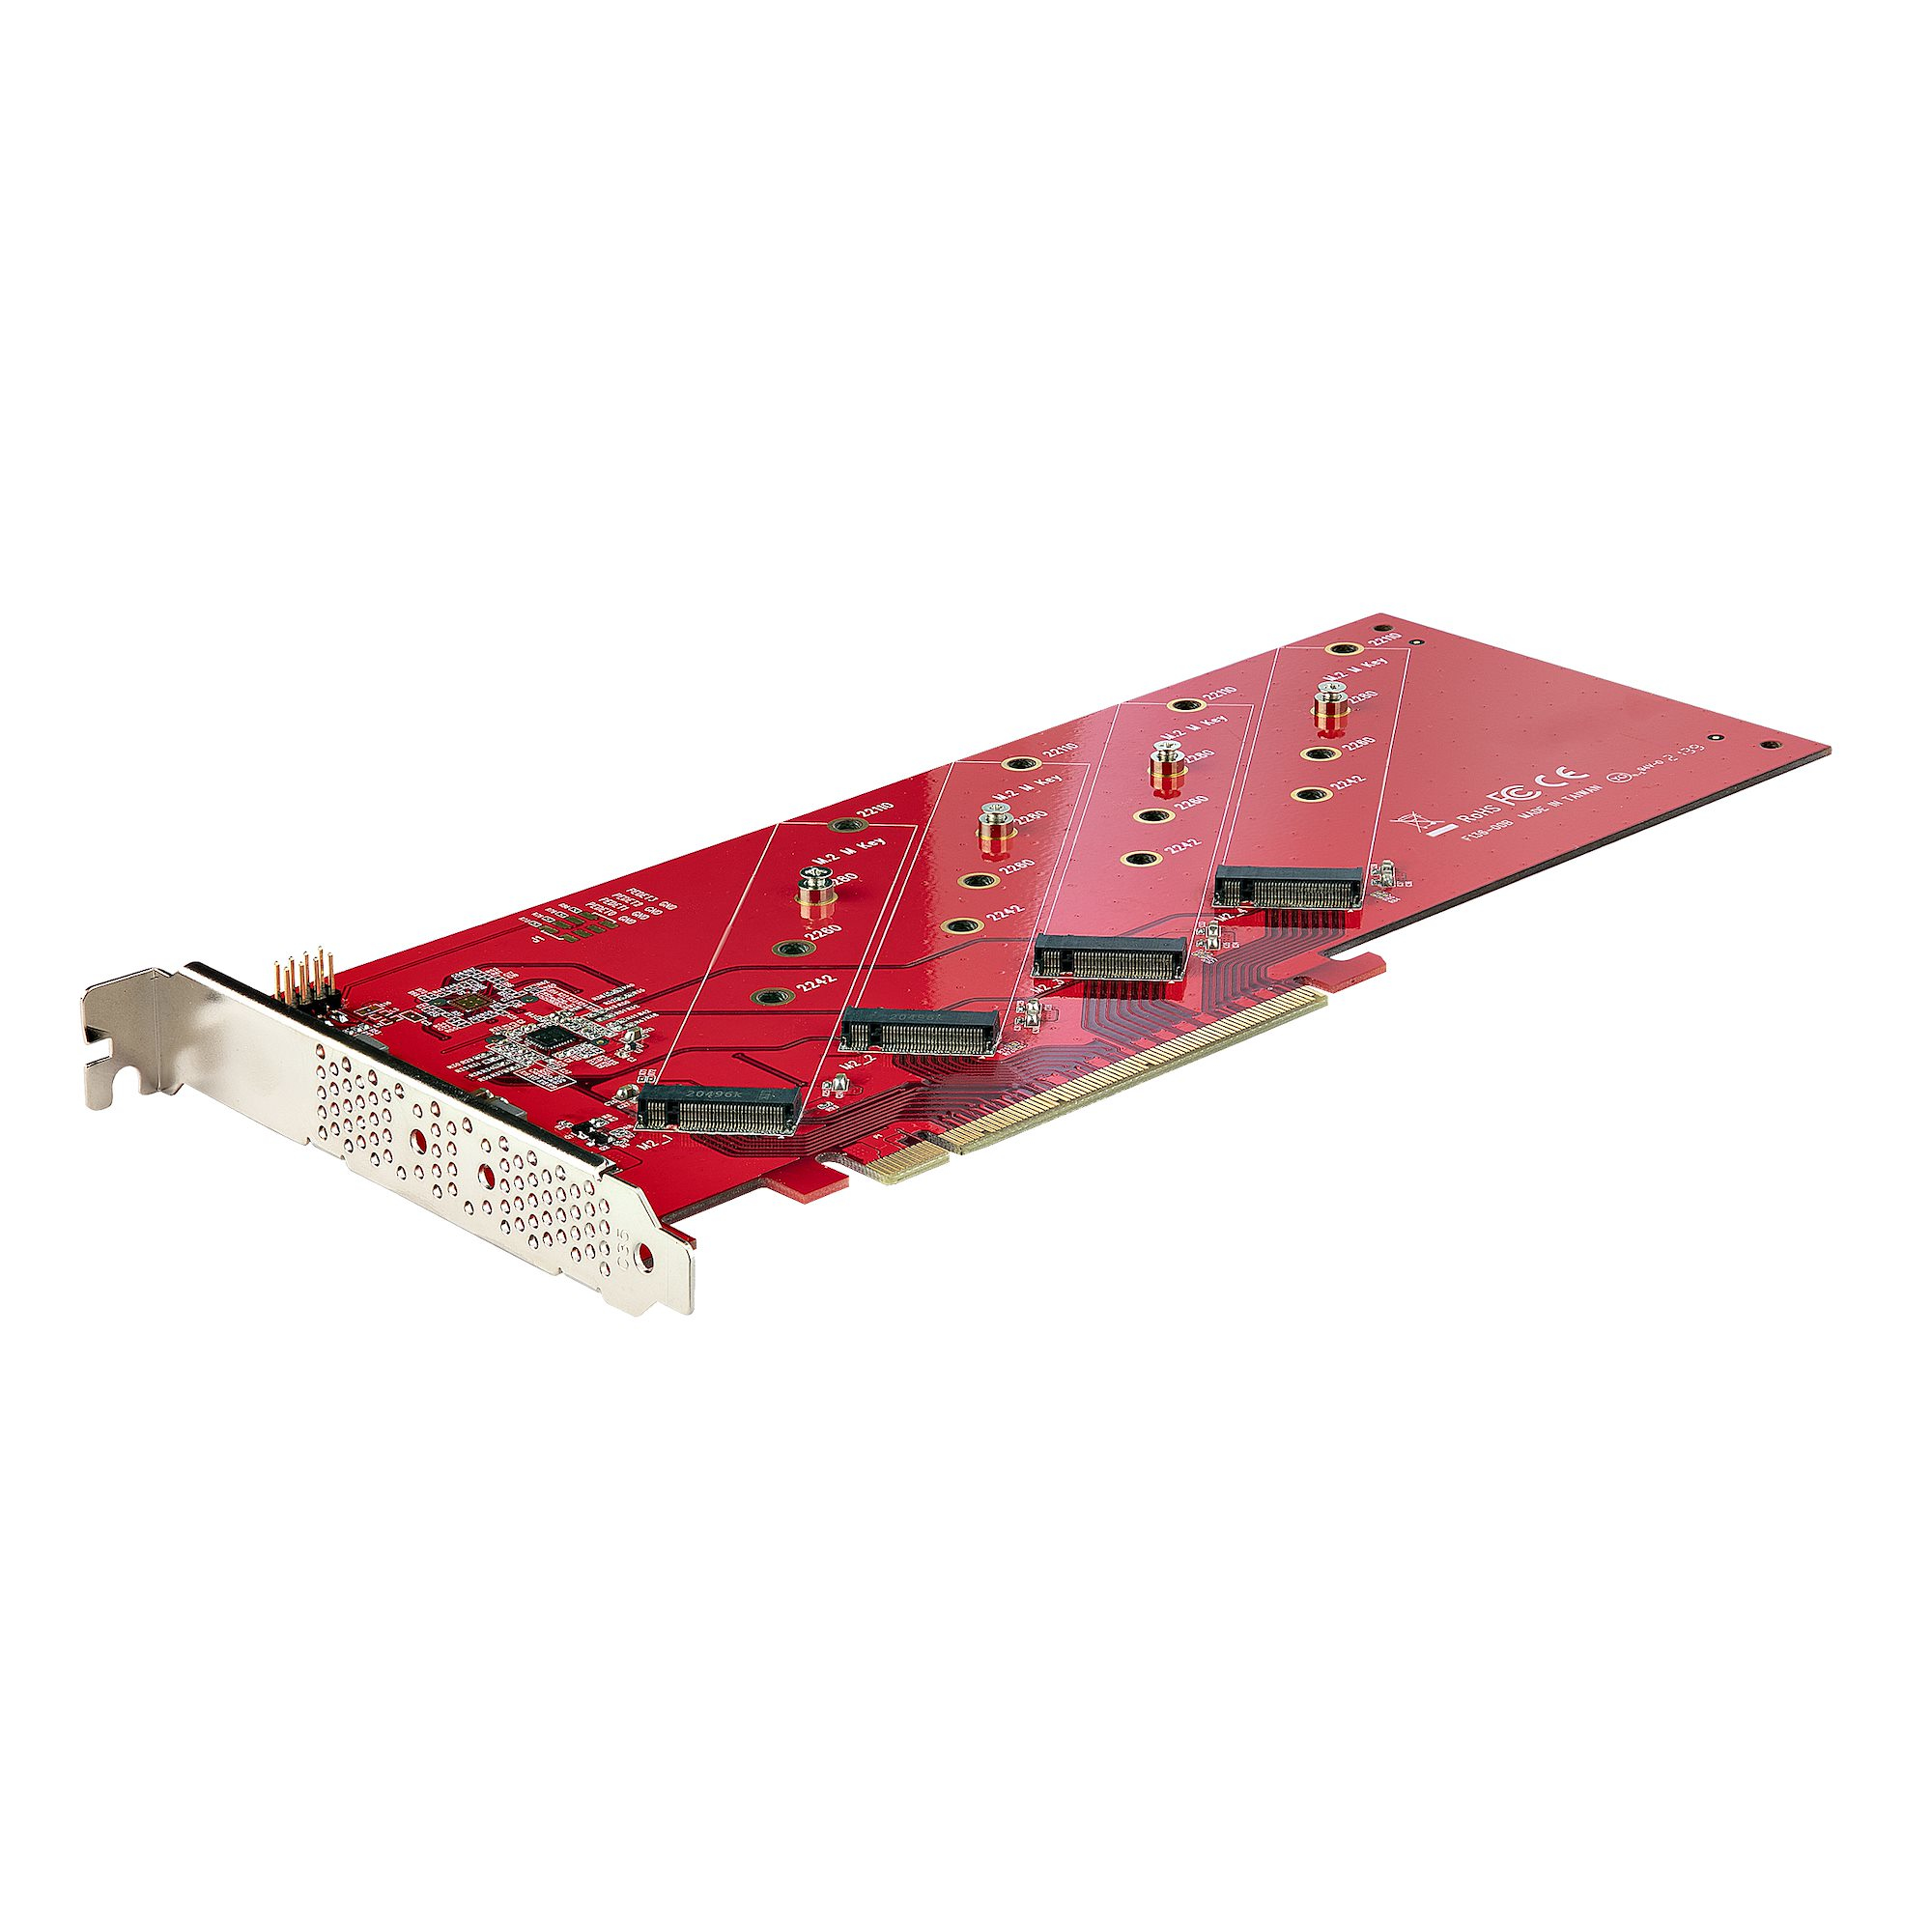 QUAD-M2-PCIE-CARD-B STARTECH.COM QUAD M.2 PCIE ADAPTER CARD